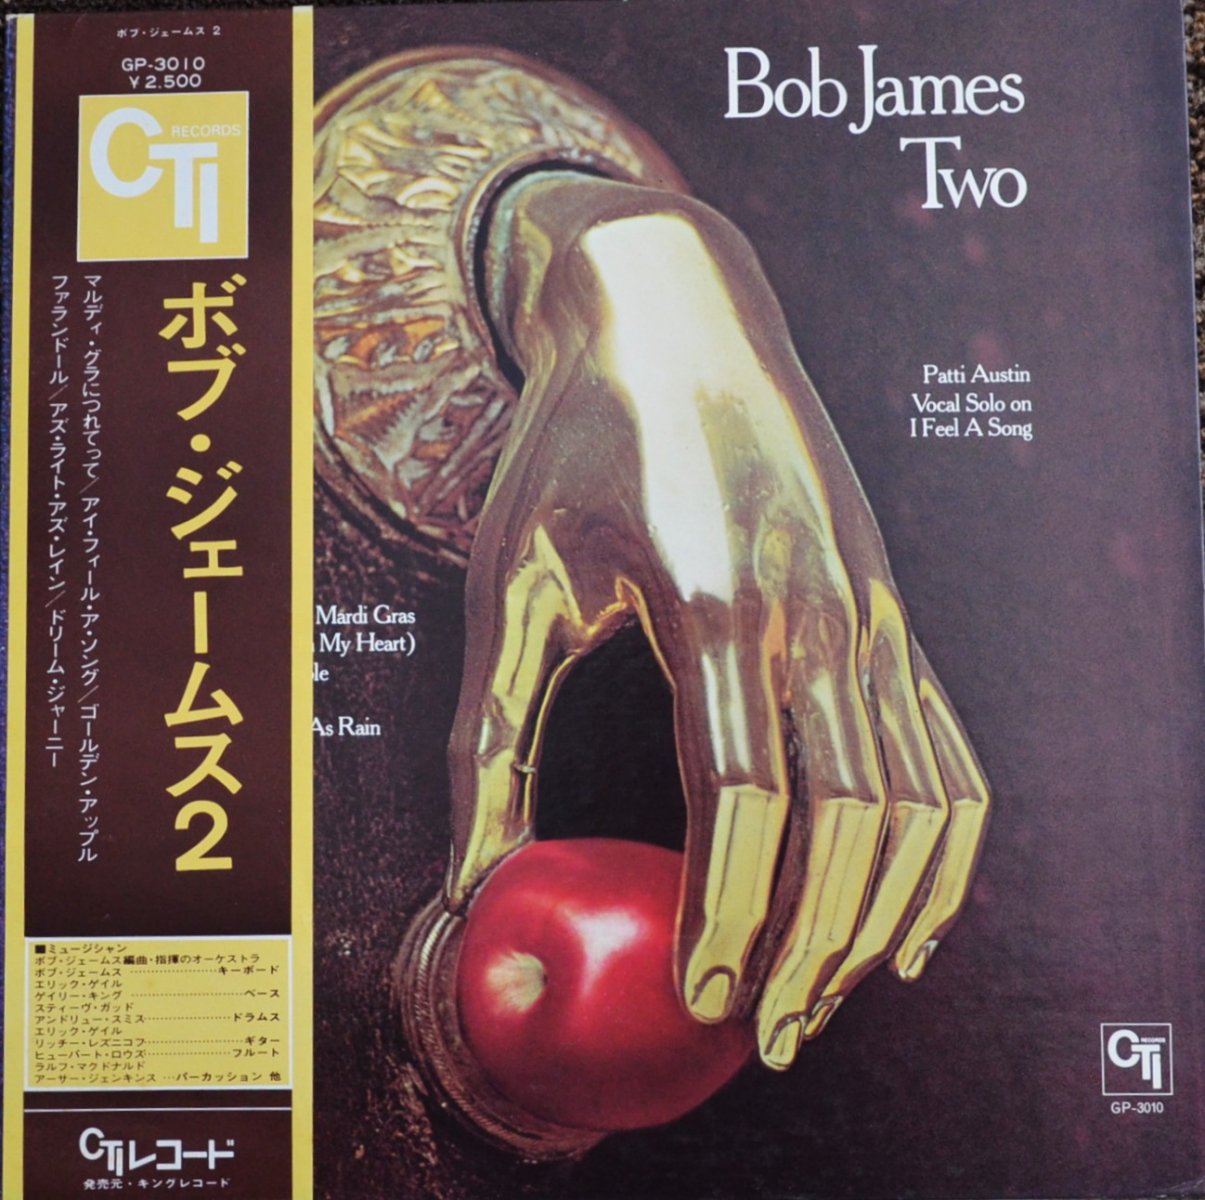 ボブ・ジェームス BOB JAMES / 2 TWO (LP)